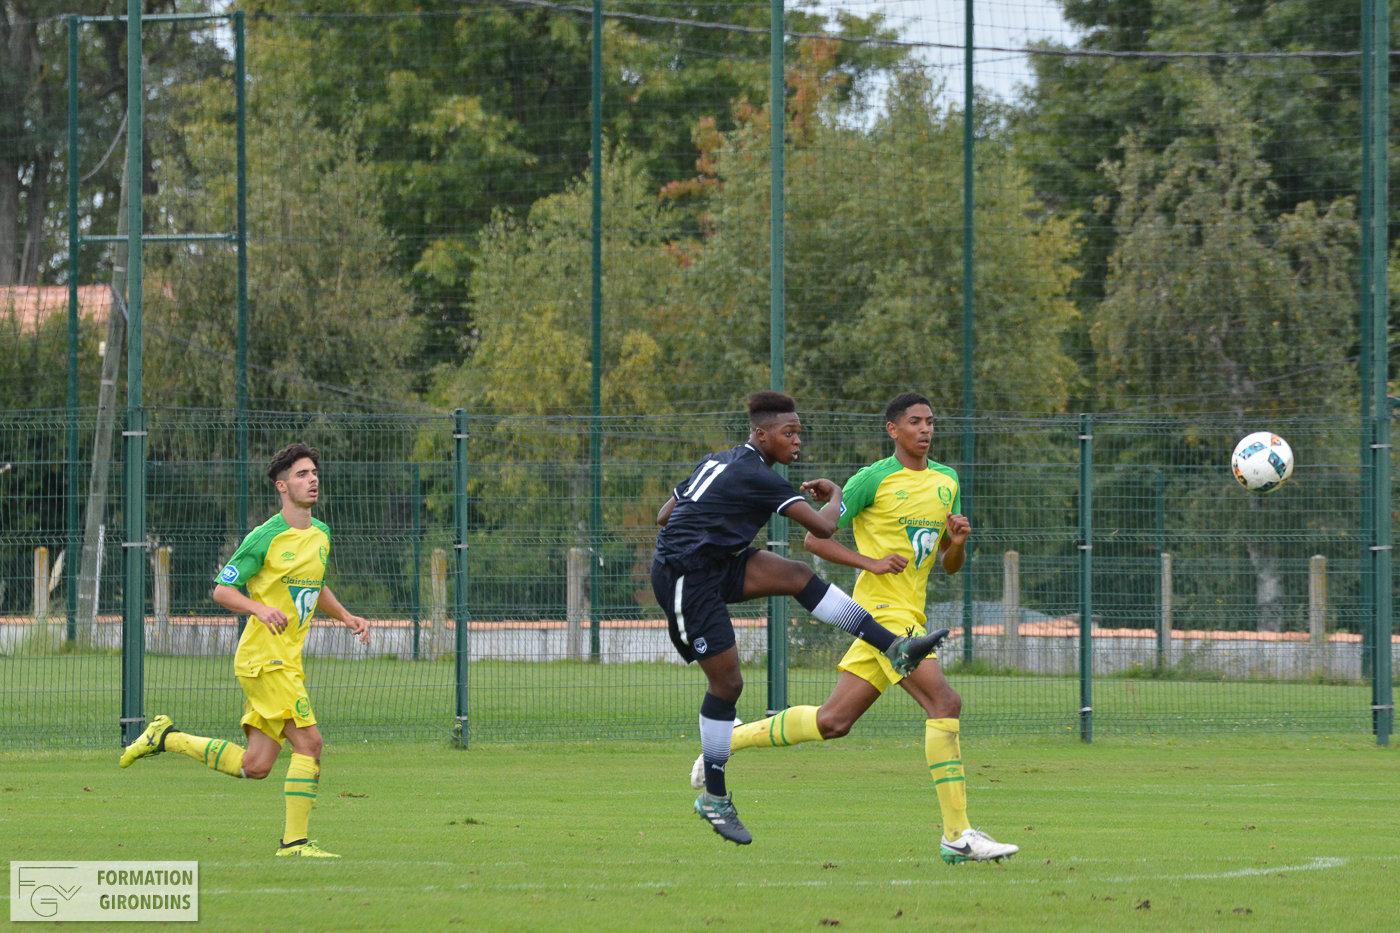 Cfa Girondins : Les U16 de Traoré et Bakwa deuxièmes au tournoi du Val de Marne - Formation Girondins 